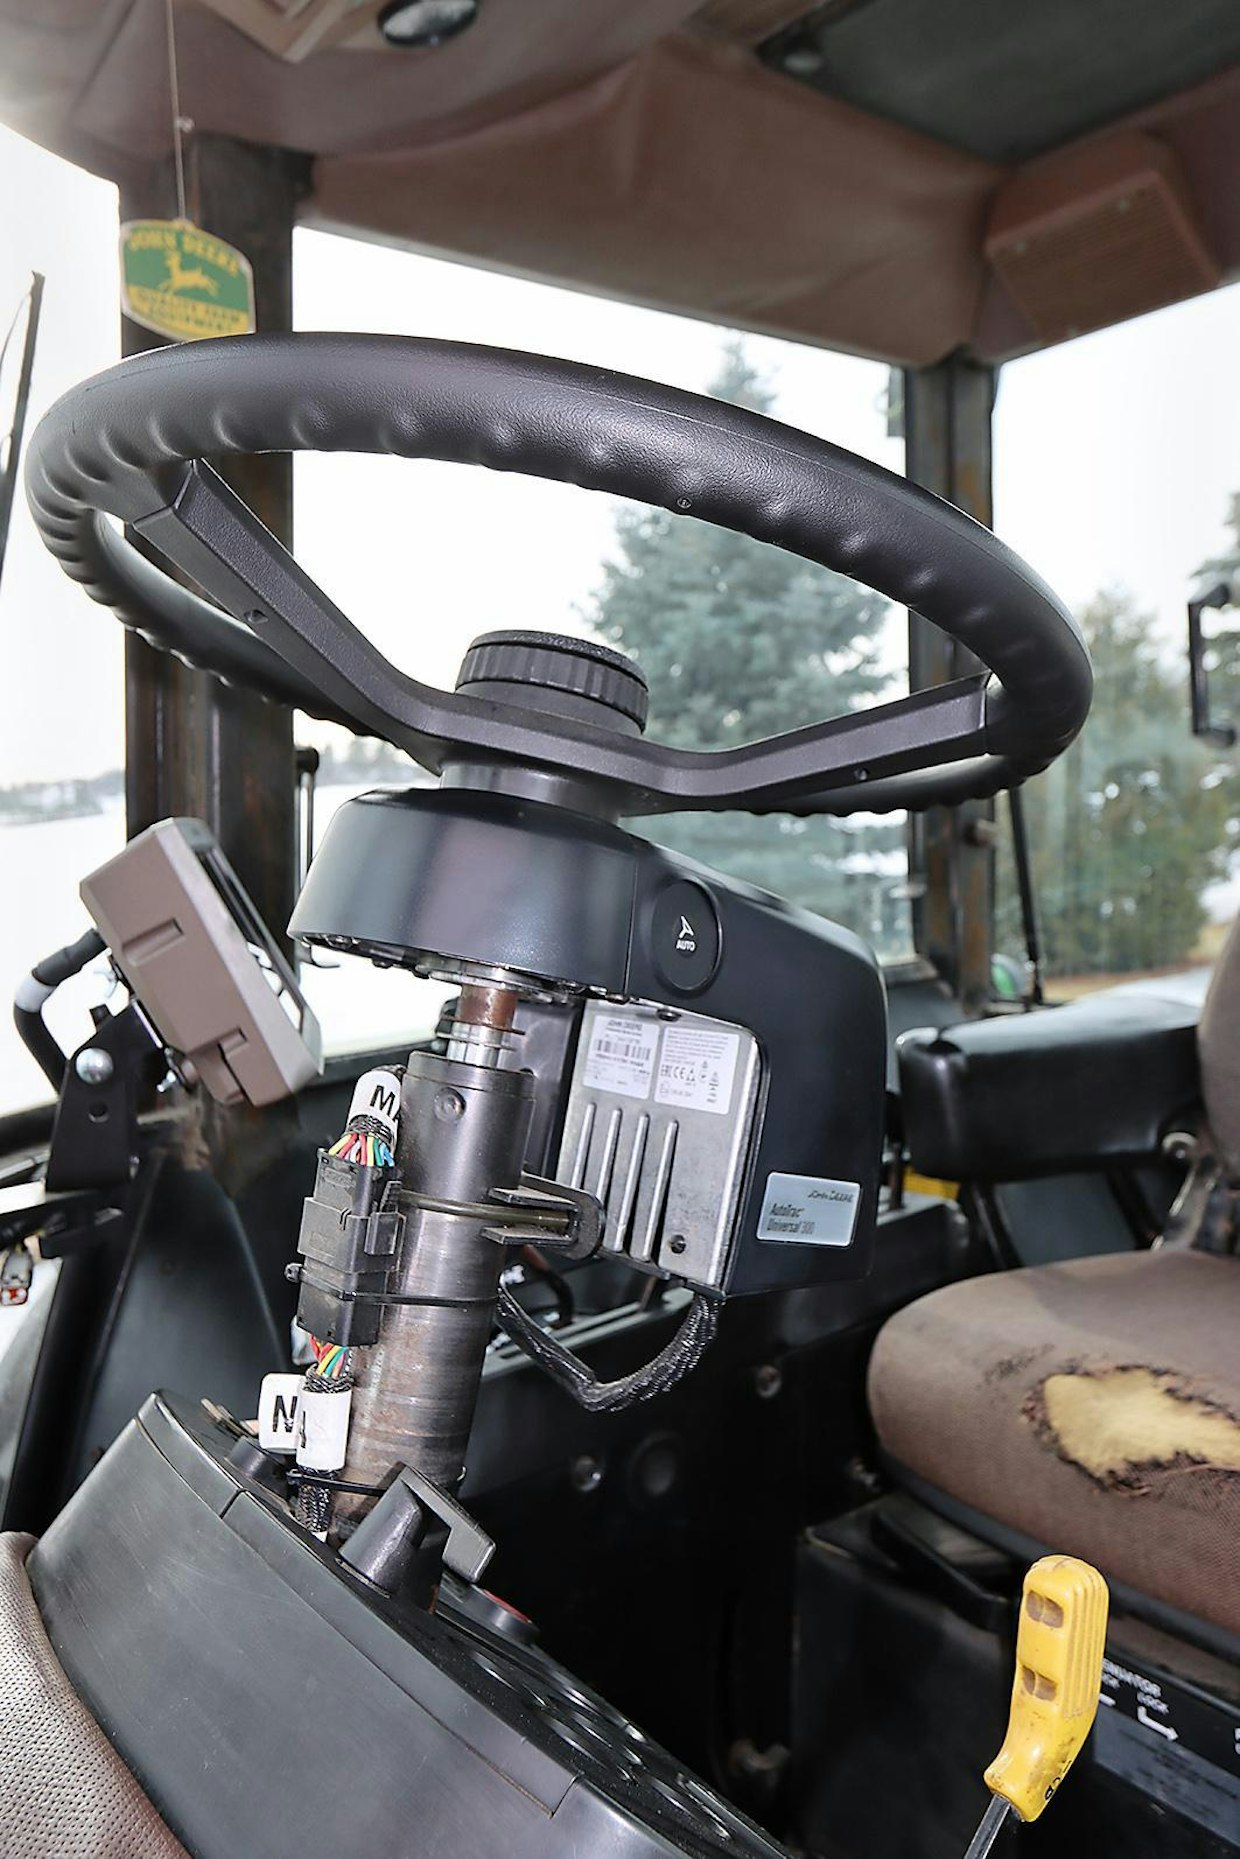 Ohjauspyörän tilalle on asennettu John Deere Autotrac Universal 300 -kääntömoottori. Se on helppo siirtää vaikkapa leikkuupuimuriin tai toiseen traktoriin. Ensimmäisellä käyttökerralla ajomoottori kalibroi itsensä automaattisesti.